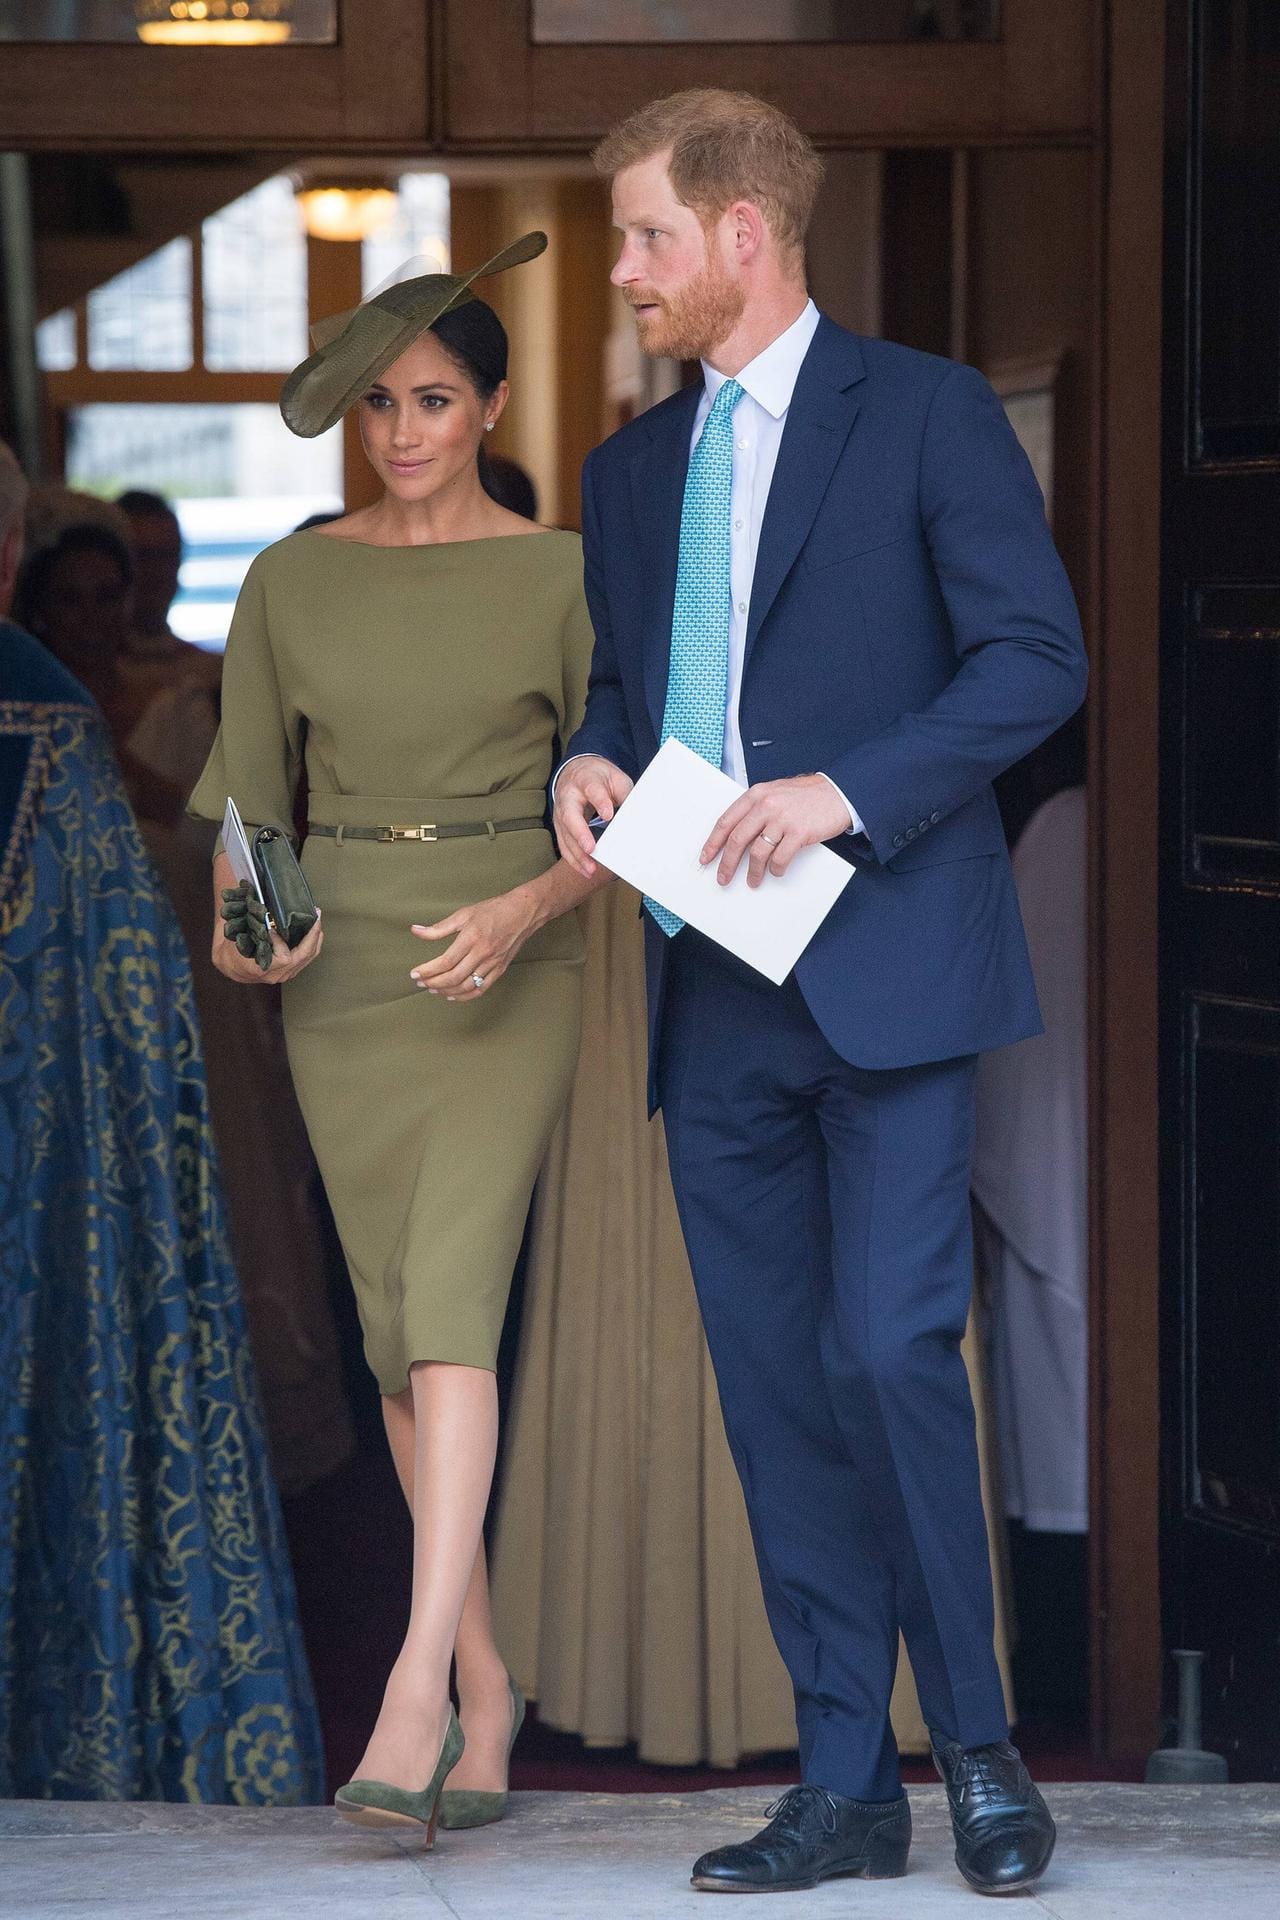 Die Taufe von Prinz Louis im Juli 2018: Zum Gottesdienst kam Herzogin Meghan in einer Kombi aus khakifarbenem Kleid und passenden Accessoires.